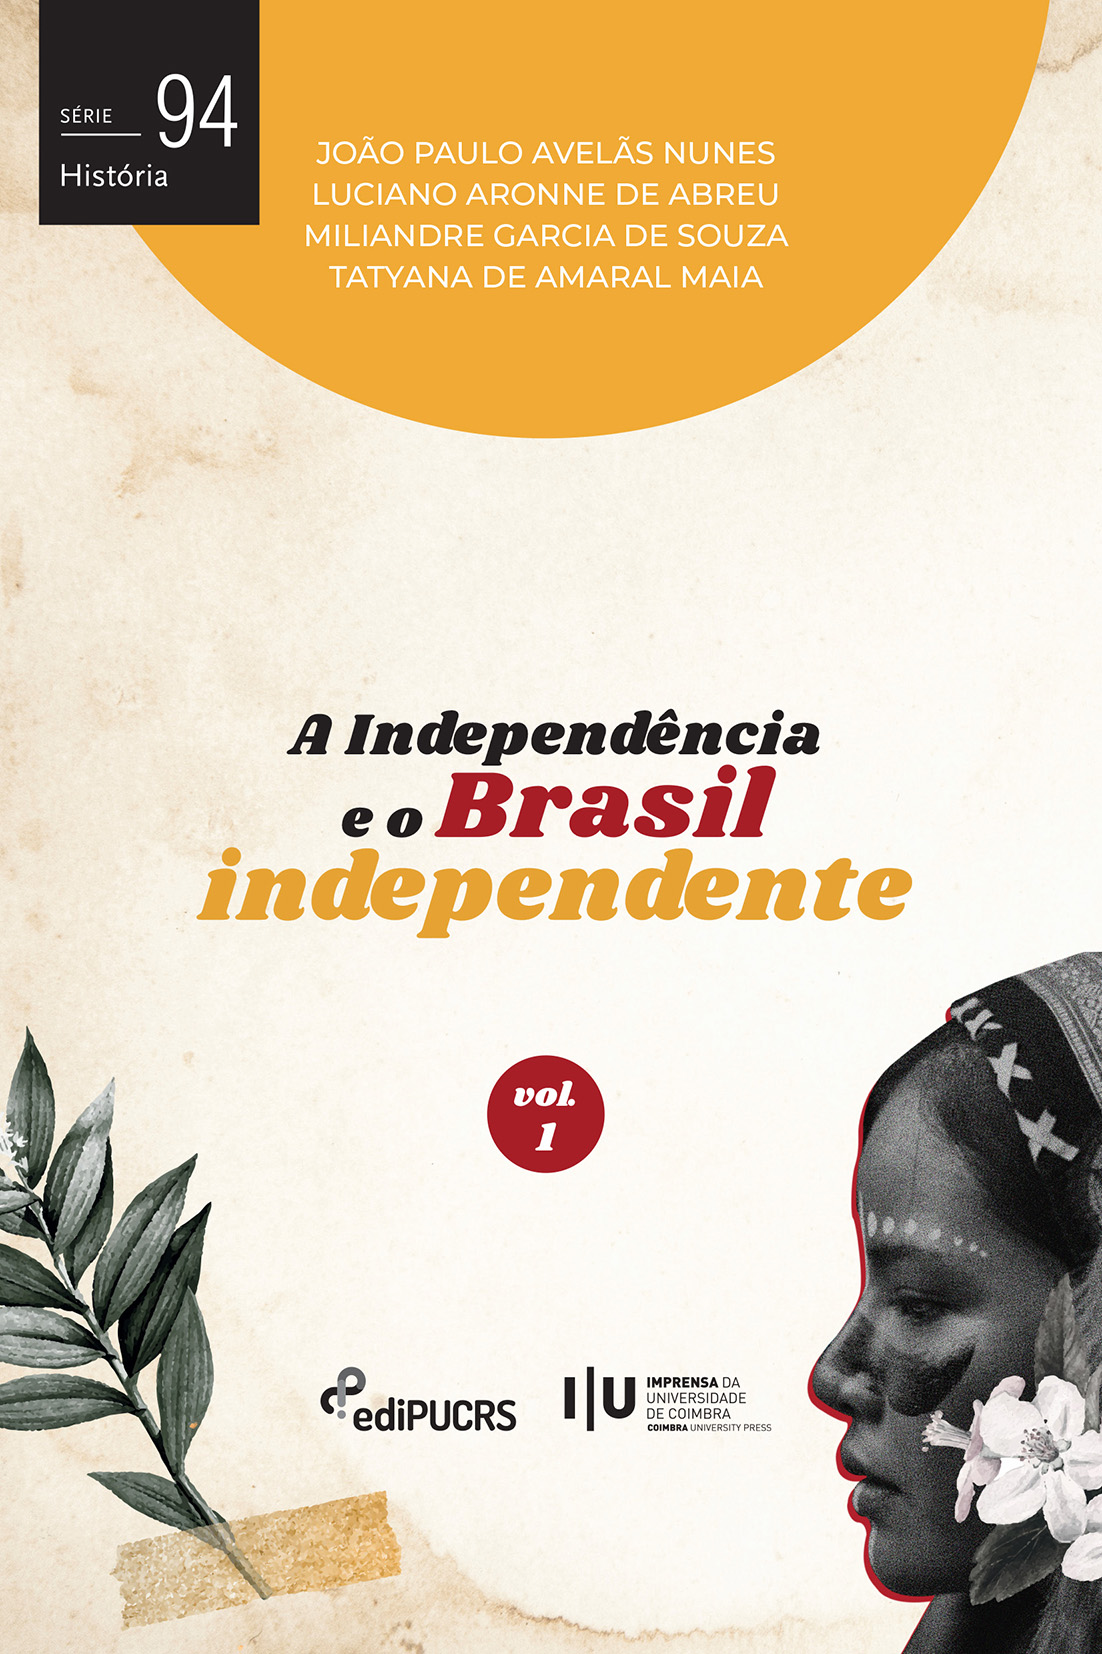 A Independência e o Brasil independente Vol. I